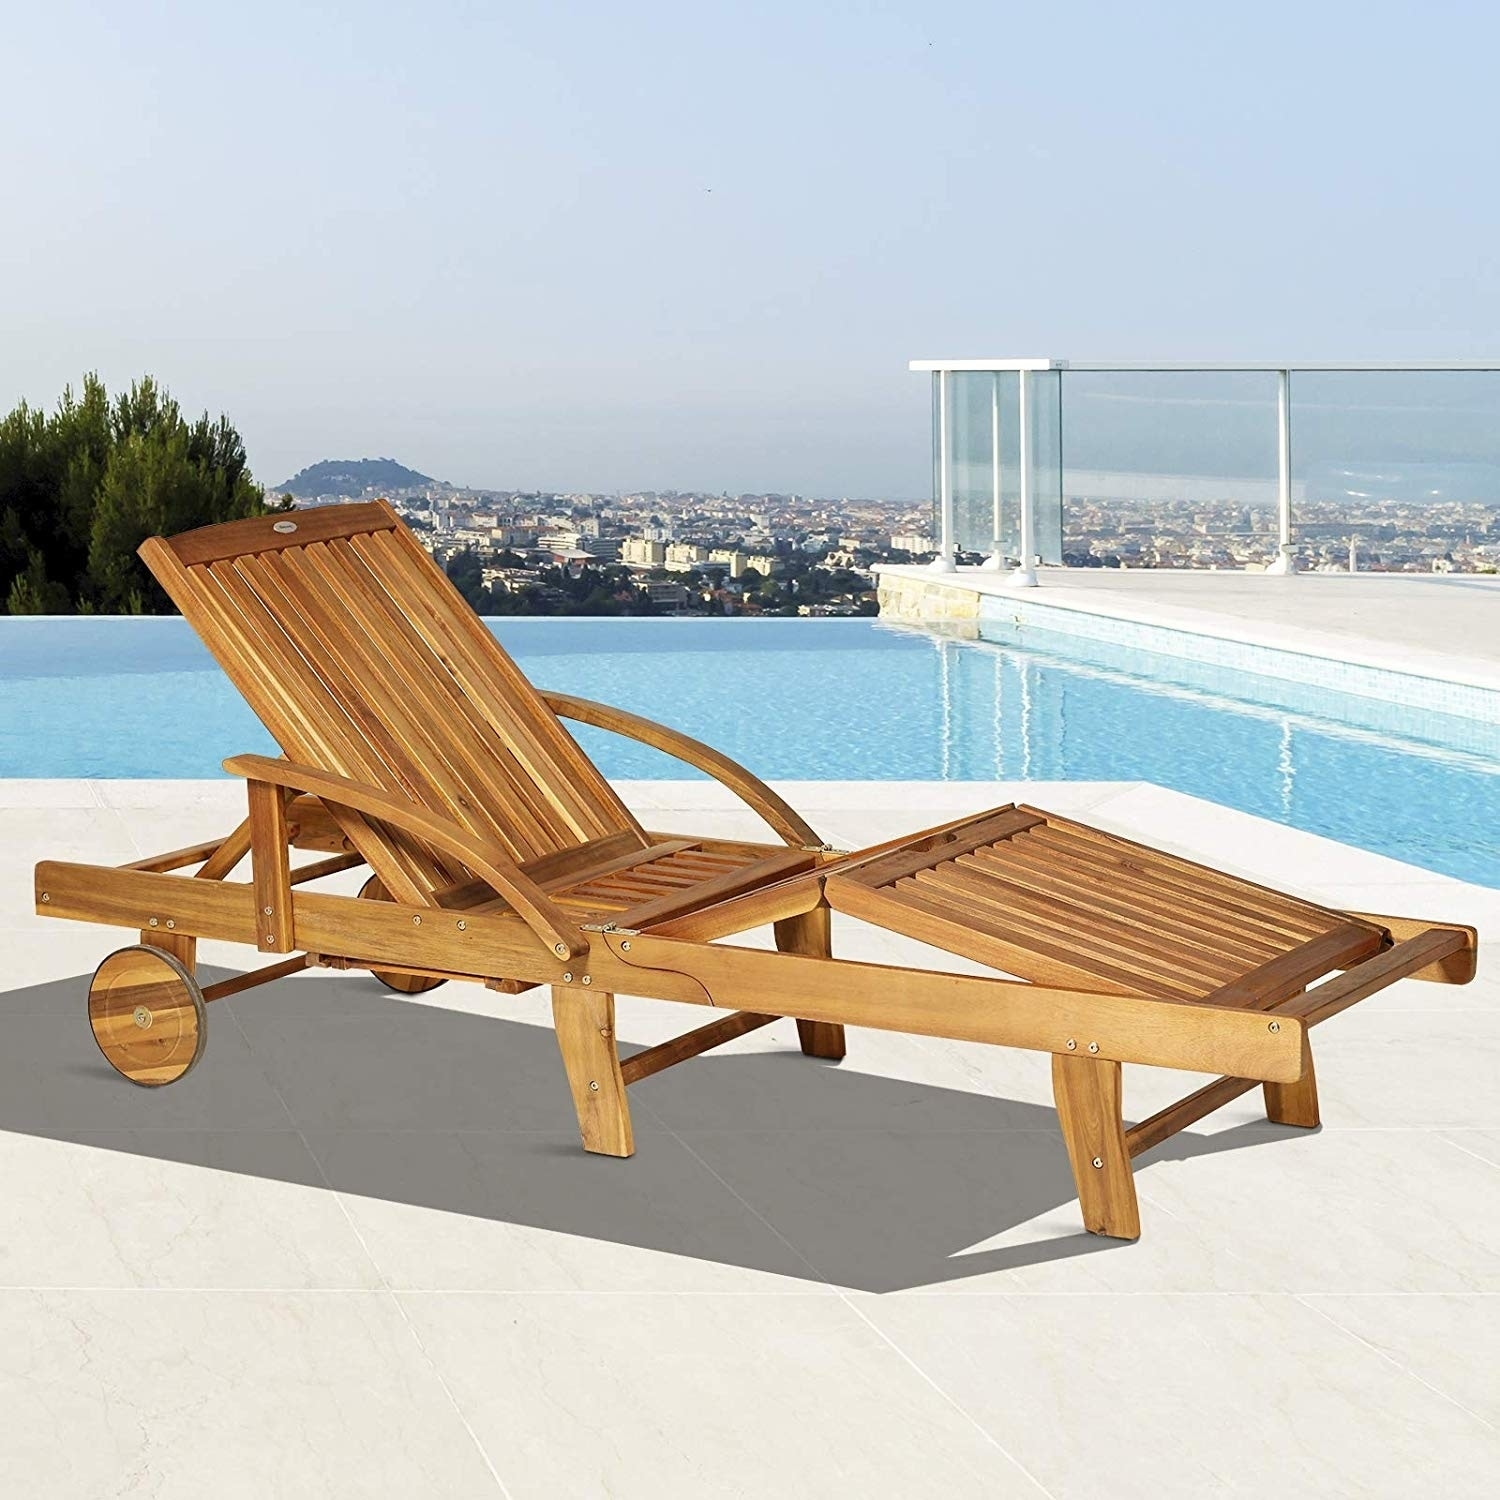 wooden folding sun lounger